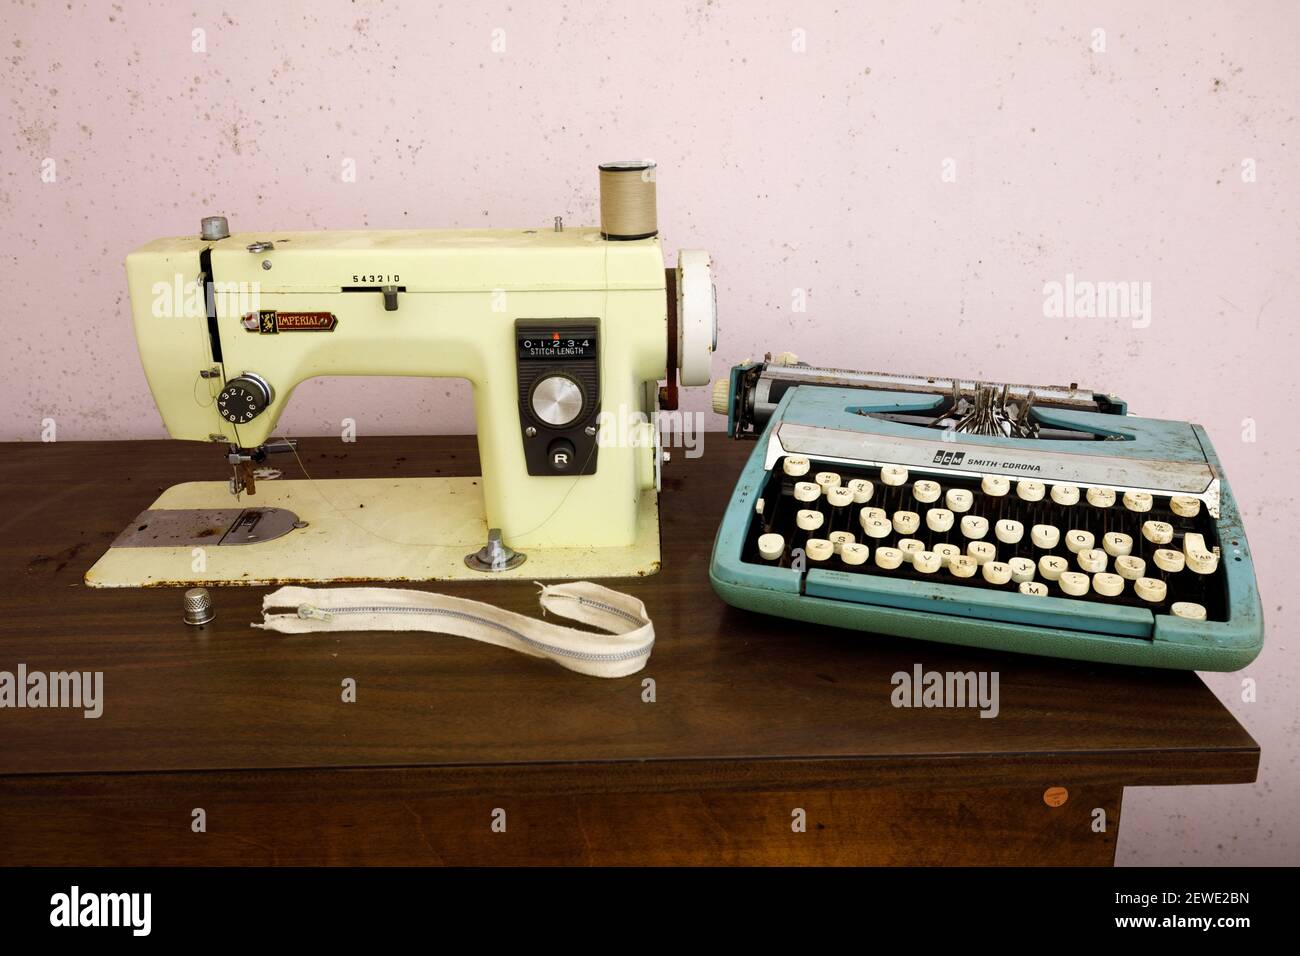 Una máquina de coser Imperial modelo 535 y una máquina de escribir Smith Corona SCM Corsair Deluxe. Foto de stock